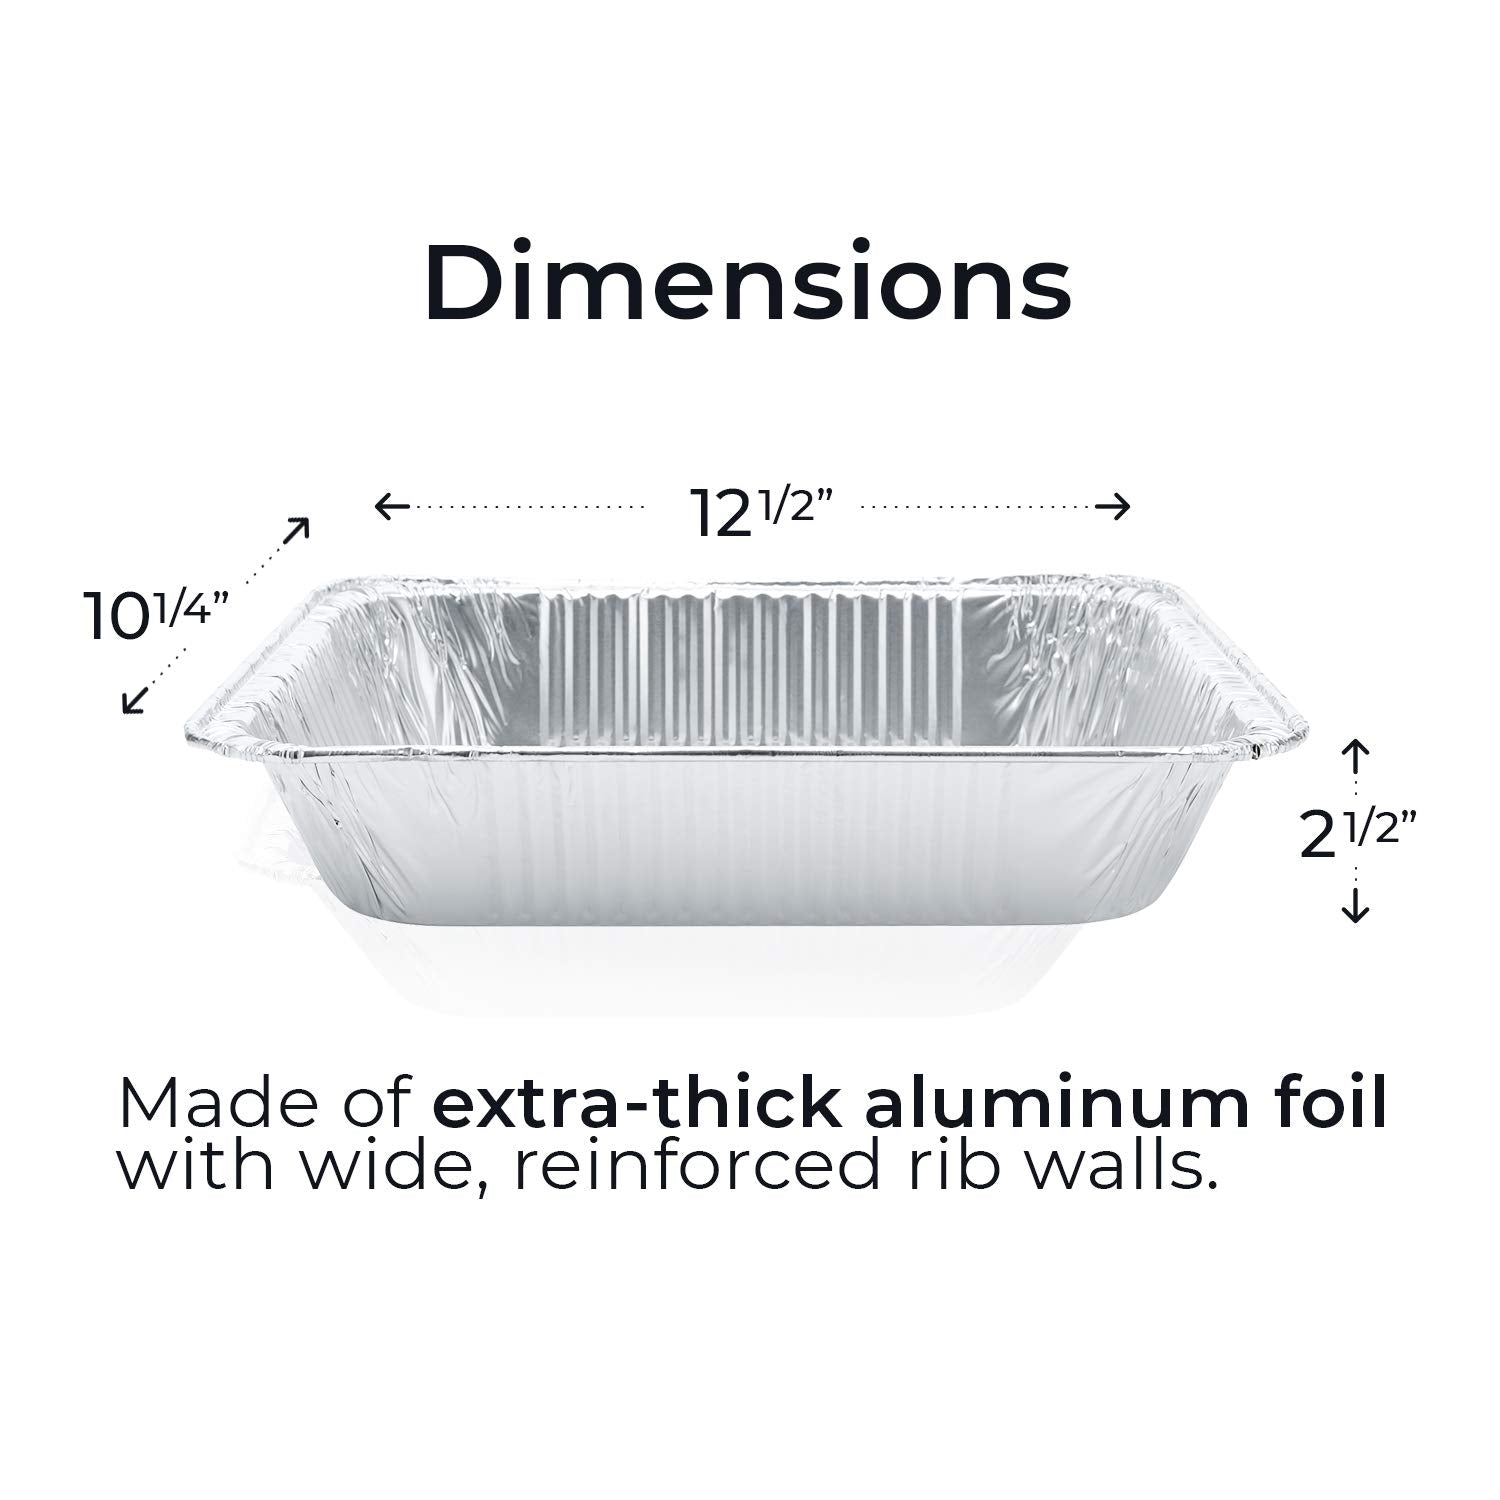 katbite 9x13 Aluminum Pans With Lids, 25 Packs Disposable Baking